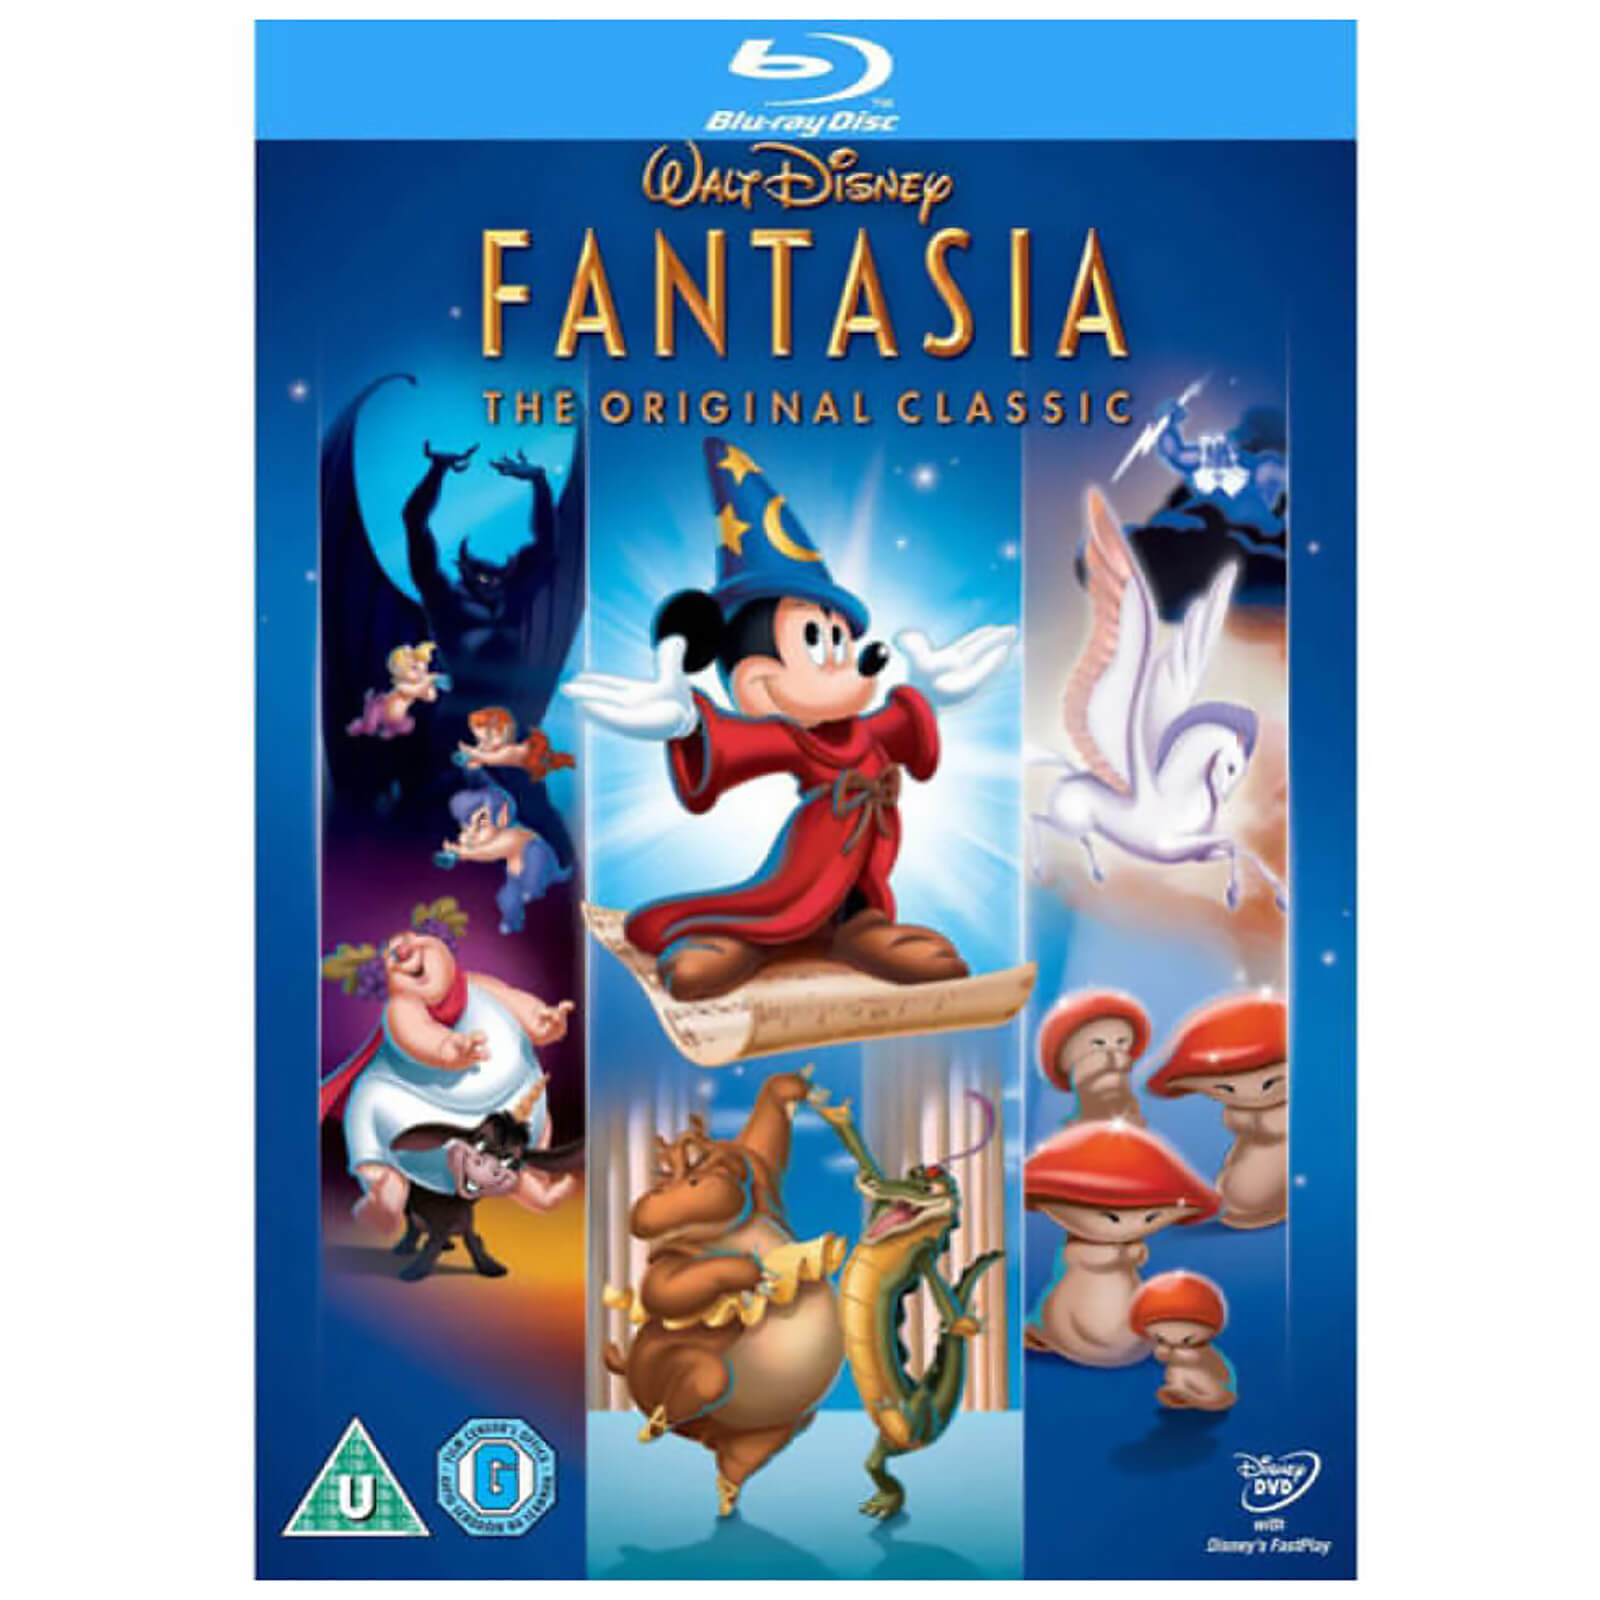 Fantasia von Walt Disney Studios